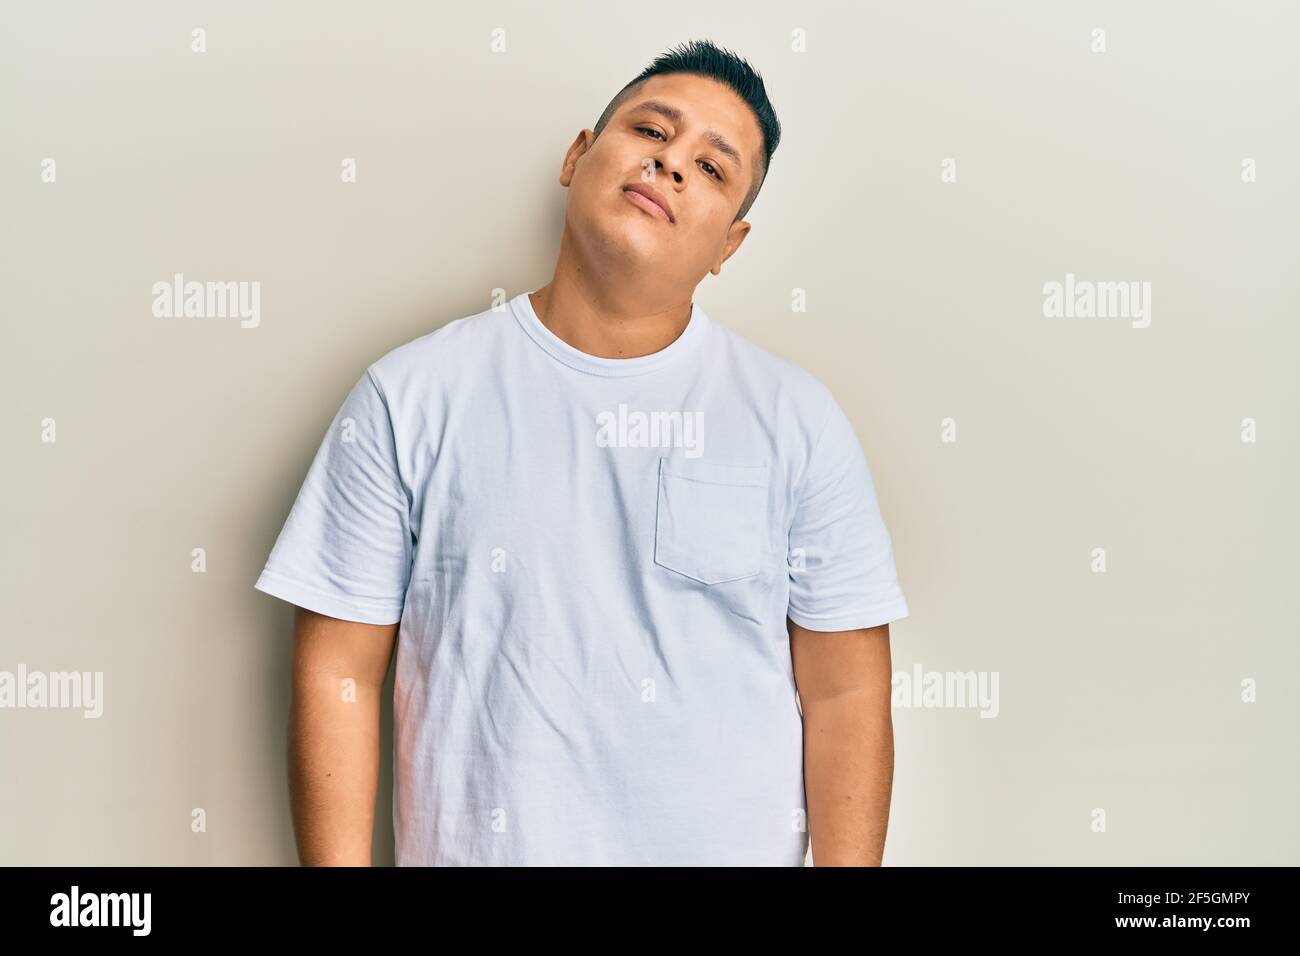 Junger latein Mann trägt lässige weiße T-Shirt entspannt mit ernster  Ausdruck im Gesicht. Einfach und natürlich Blick auf die Kamera  Stockfotografie - Alamy